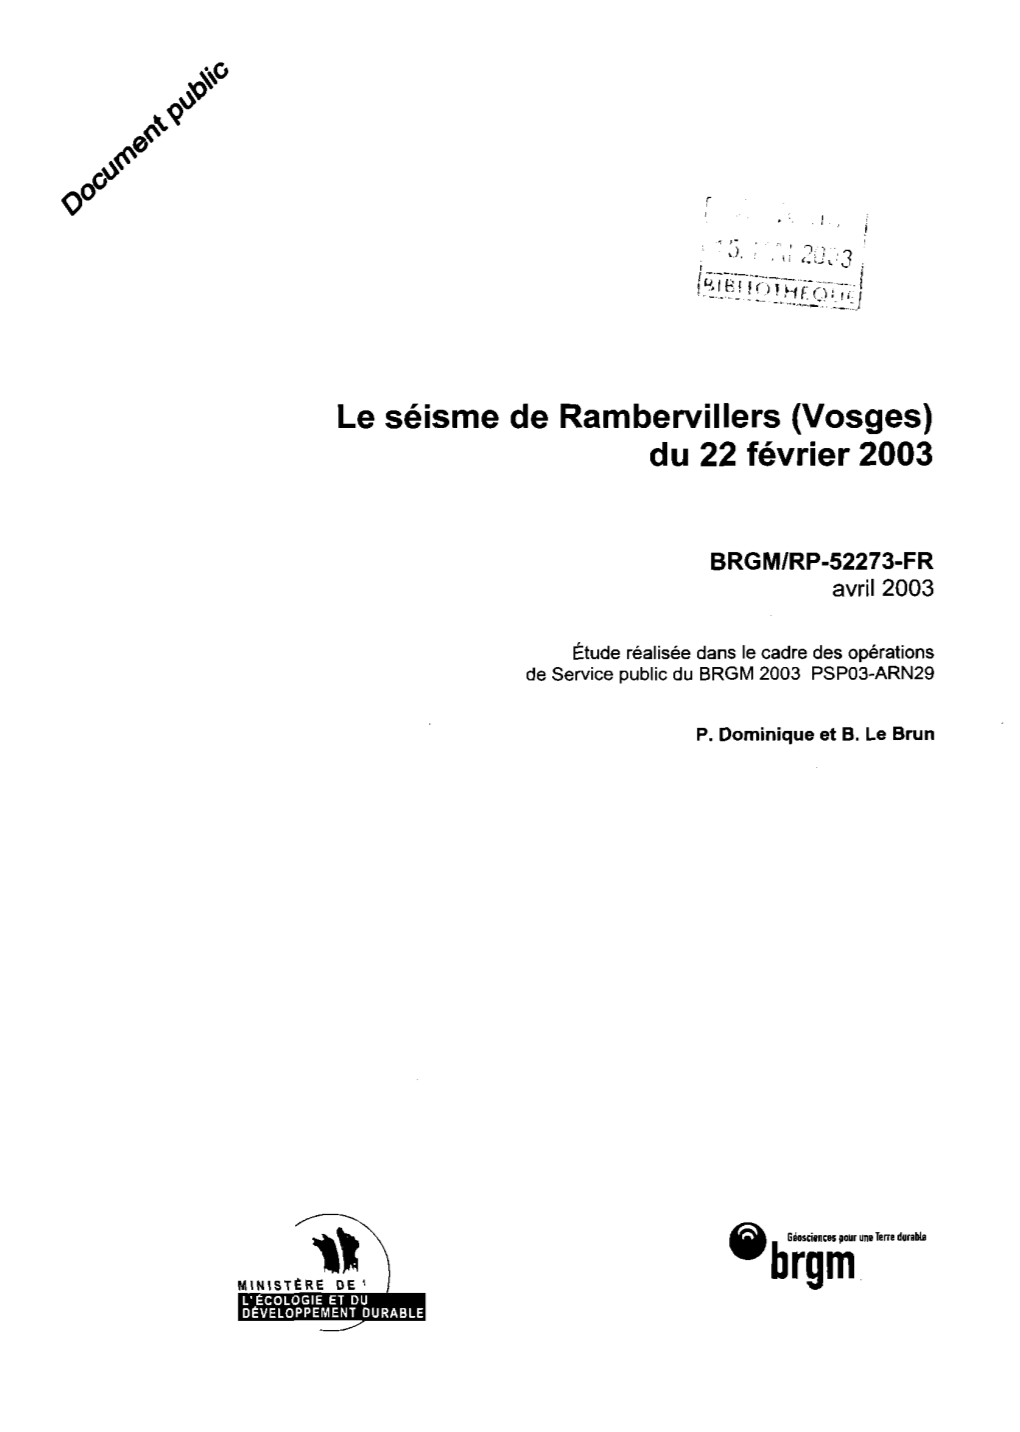 Le Séisme De Ramberviiiers (Vosges) Du 22 Février 2003